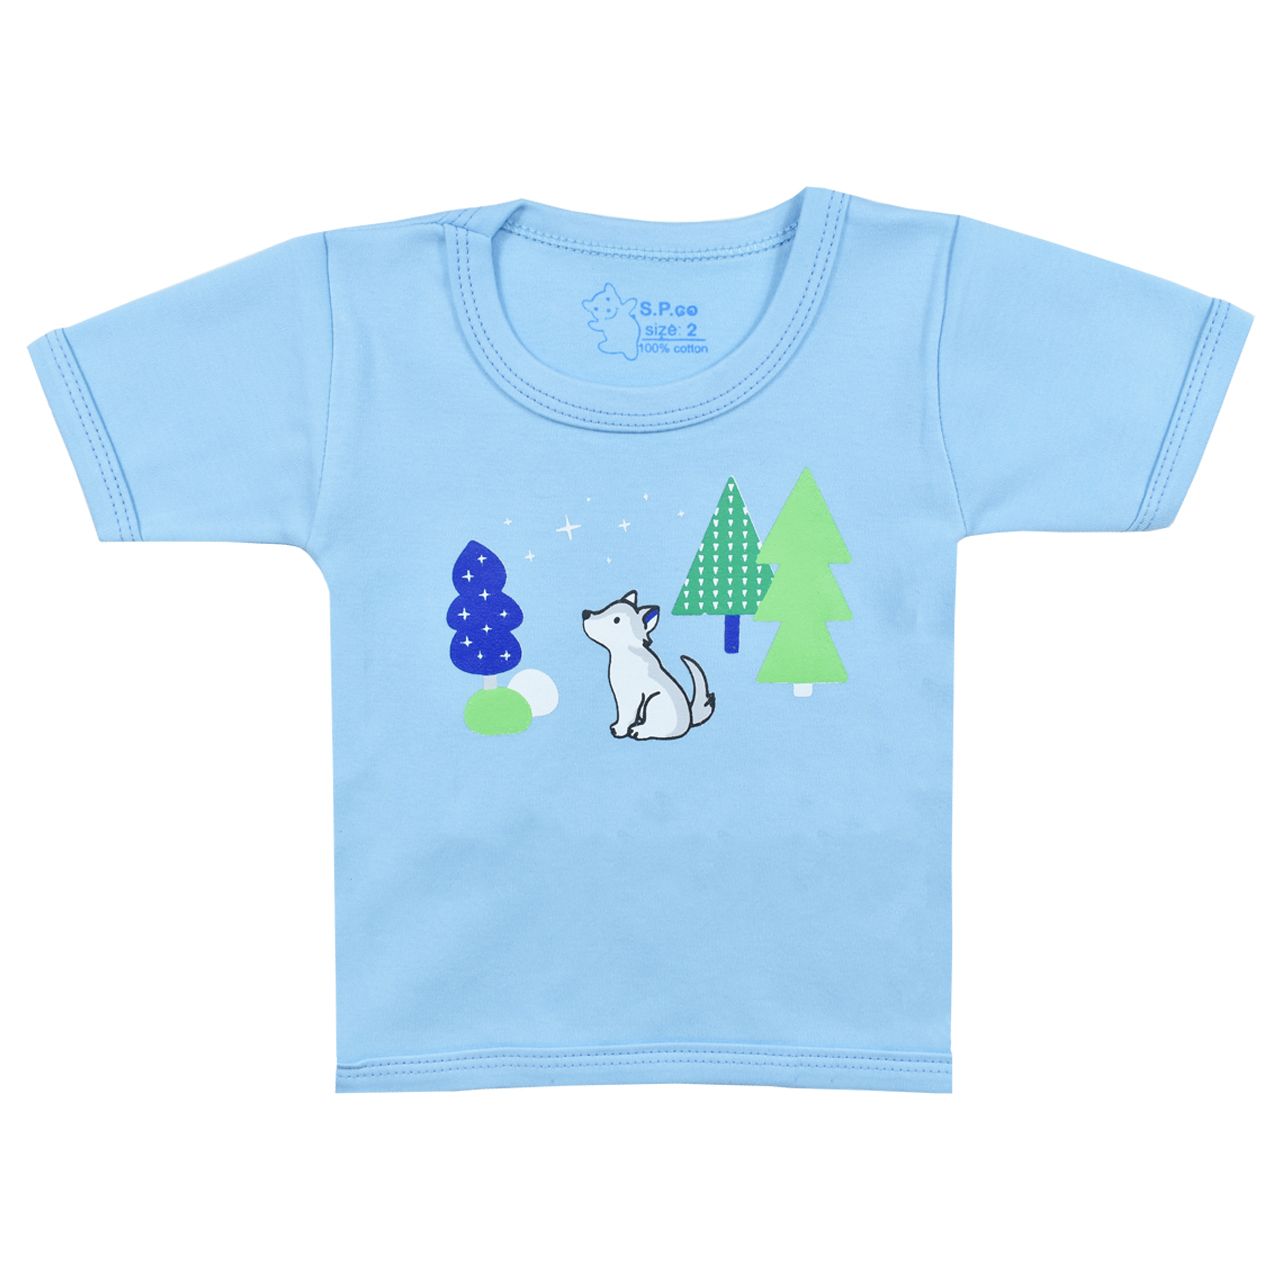 تی شرت آستین کوتاه نوزادی اسپیکو مدل کاج کد 1 -  - 1